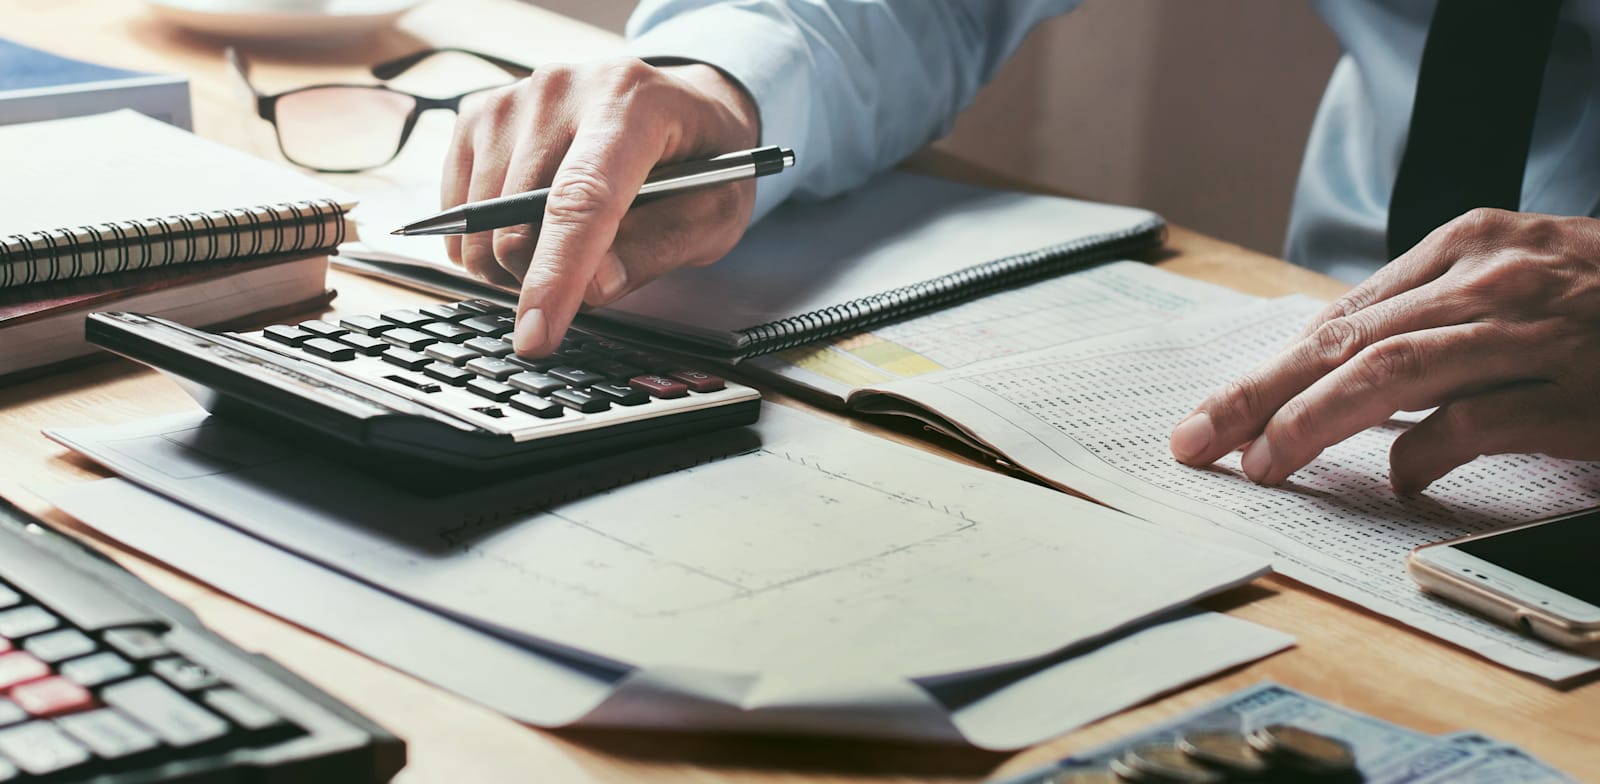 אילו פעולות כדאי לבצע לפני סיום שנת המס? / צילום: Shutterstock